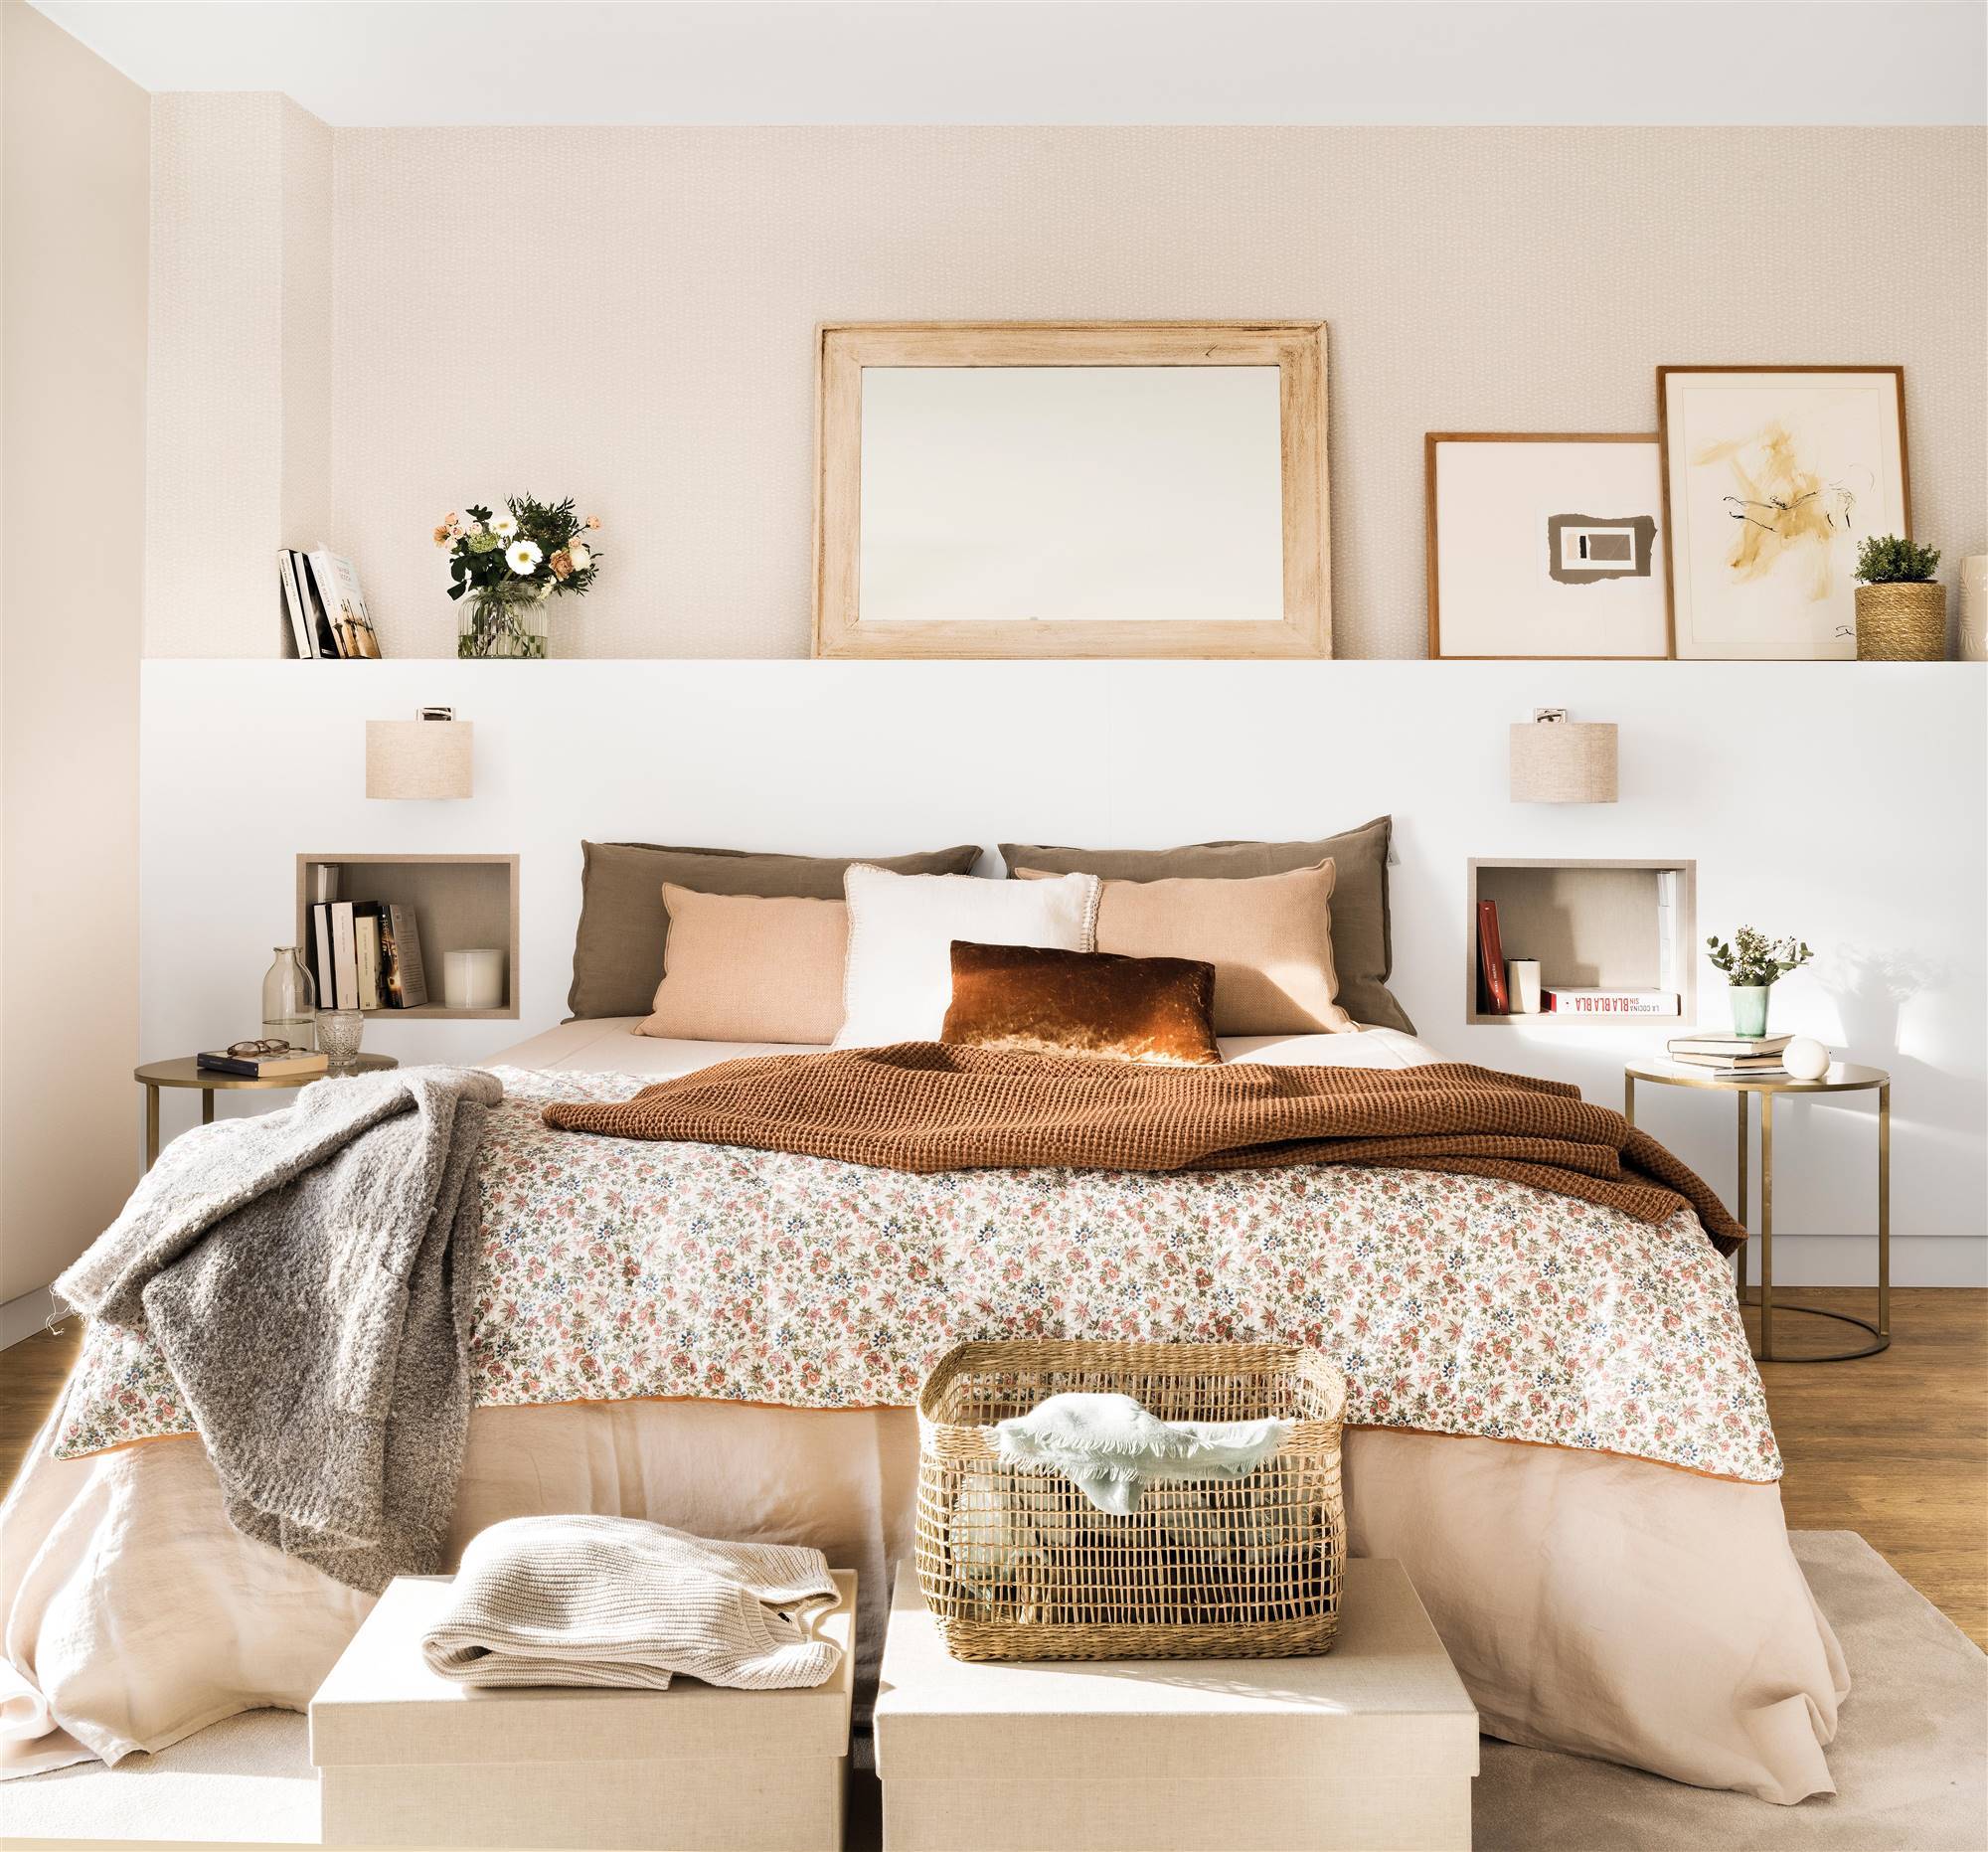 Dormitorio con cabecero de obra en blanco decorado con cuadros y espejos y hornacinas a modo de mesillas de noche integradas.